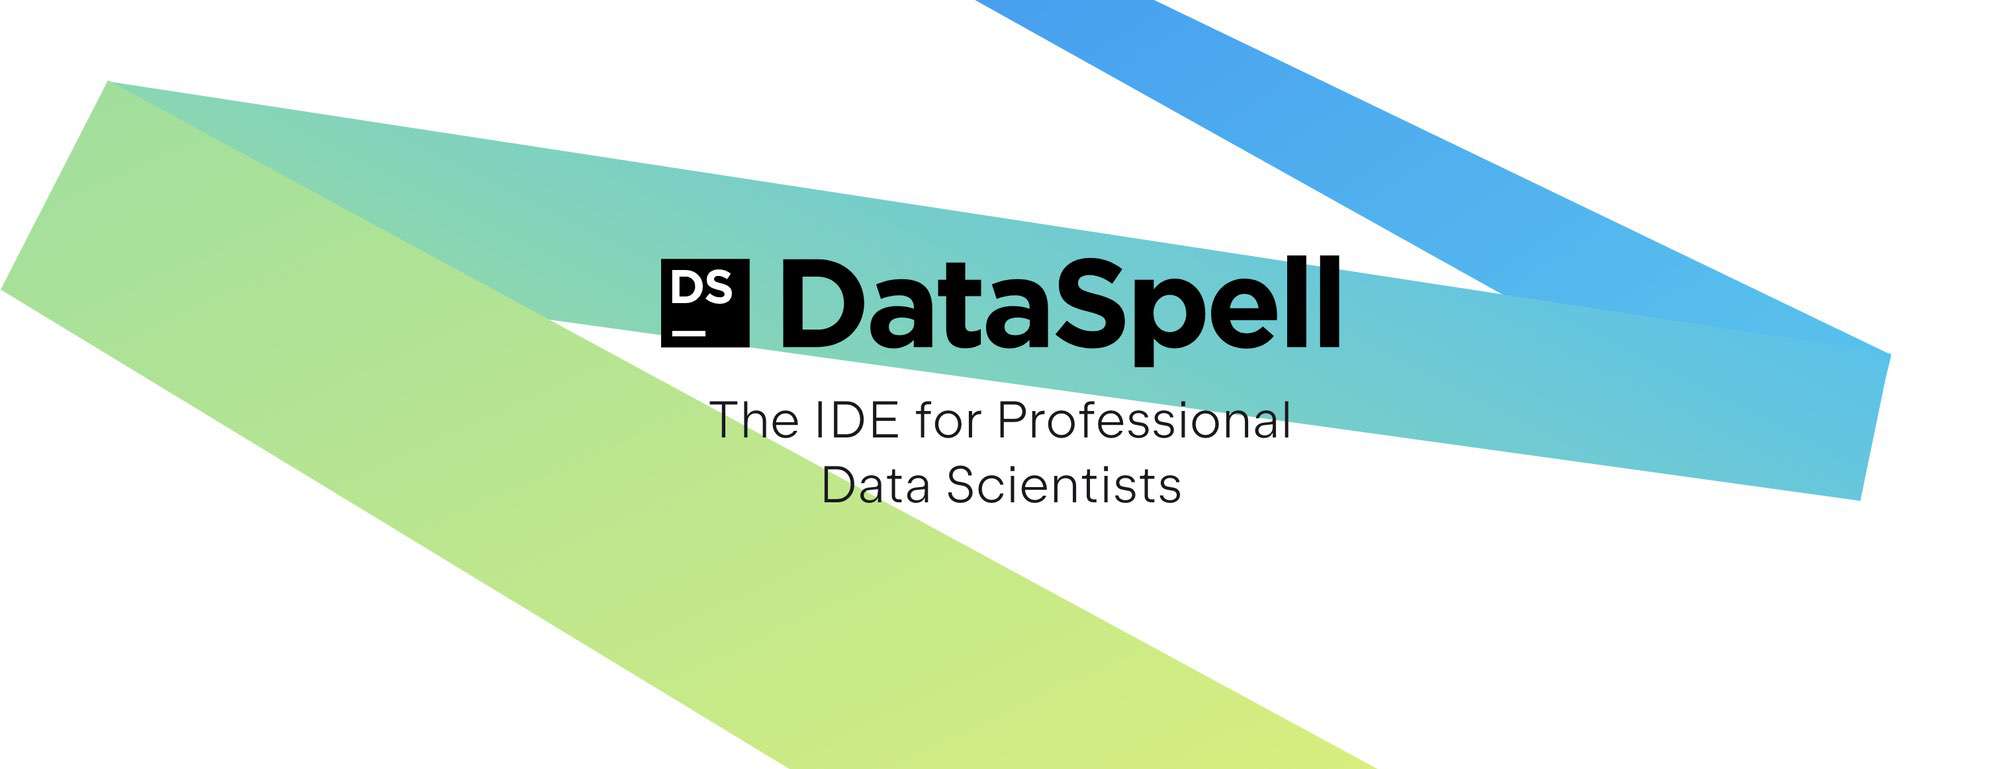 รีวิว DataSpell ของดีสำหรับงาน Data Scientist ที่ทำให้ชีวิตง่ายขึ้นเยอะ